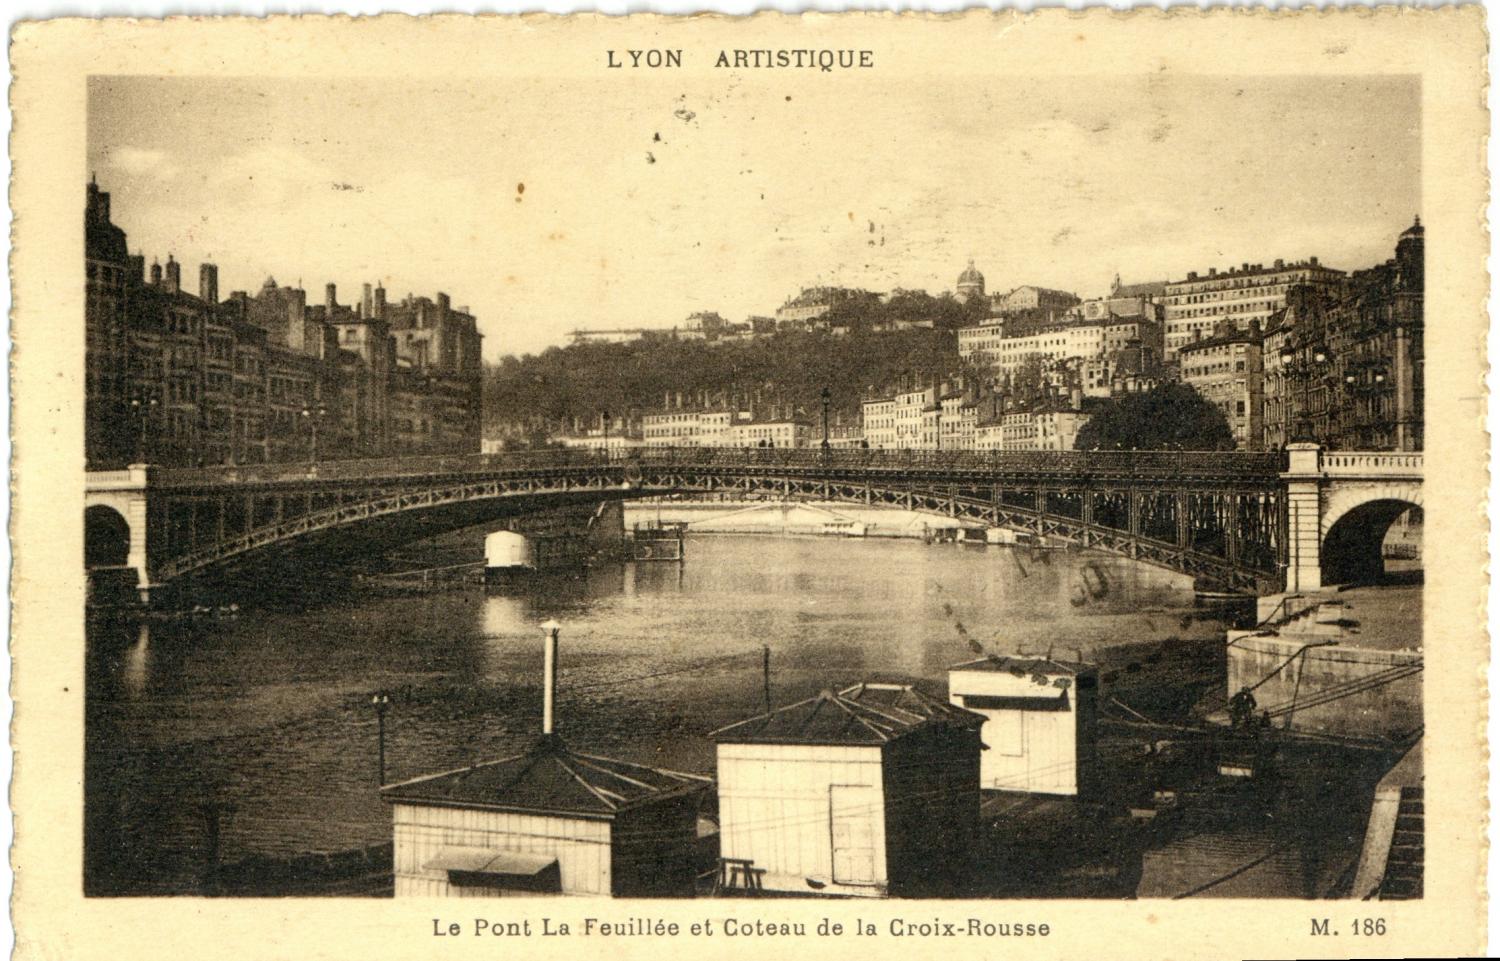 Lyon Artistique : Le Pont La Feuillée et Coteau de la Croix-Rousse.